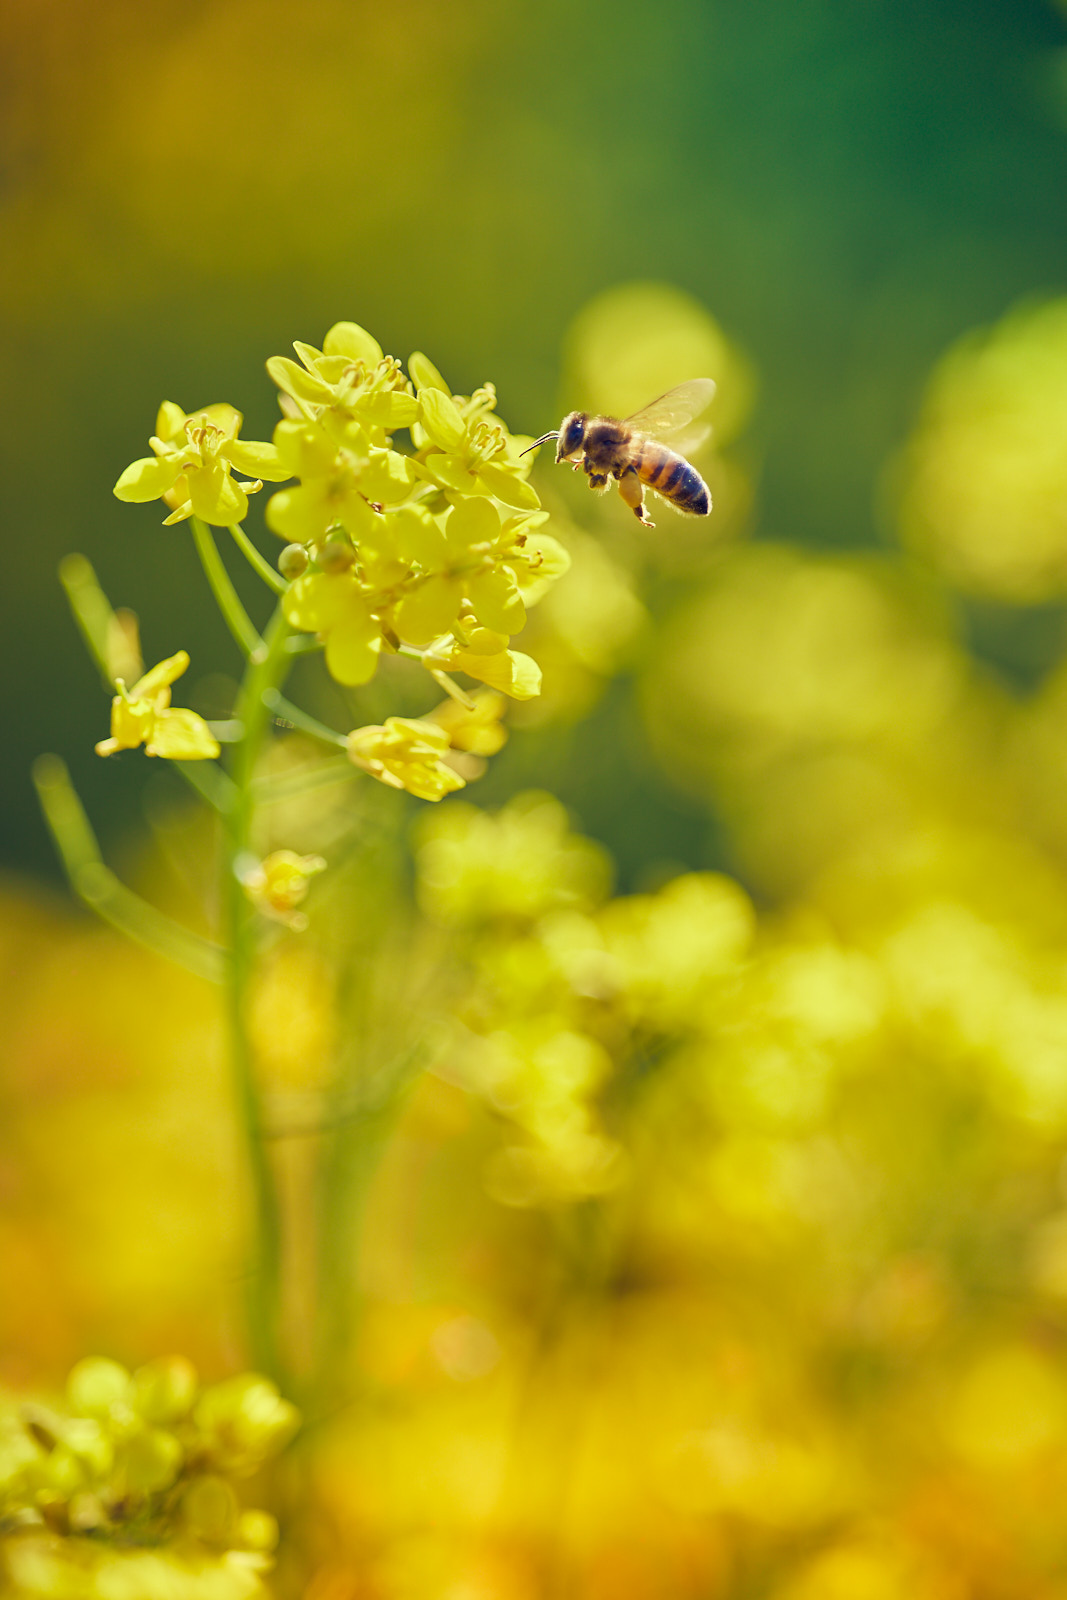 L'ape e il fiore...